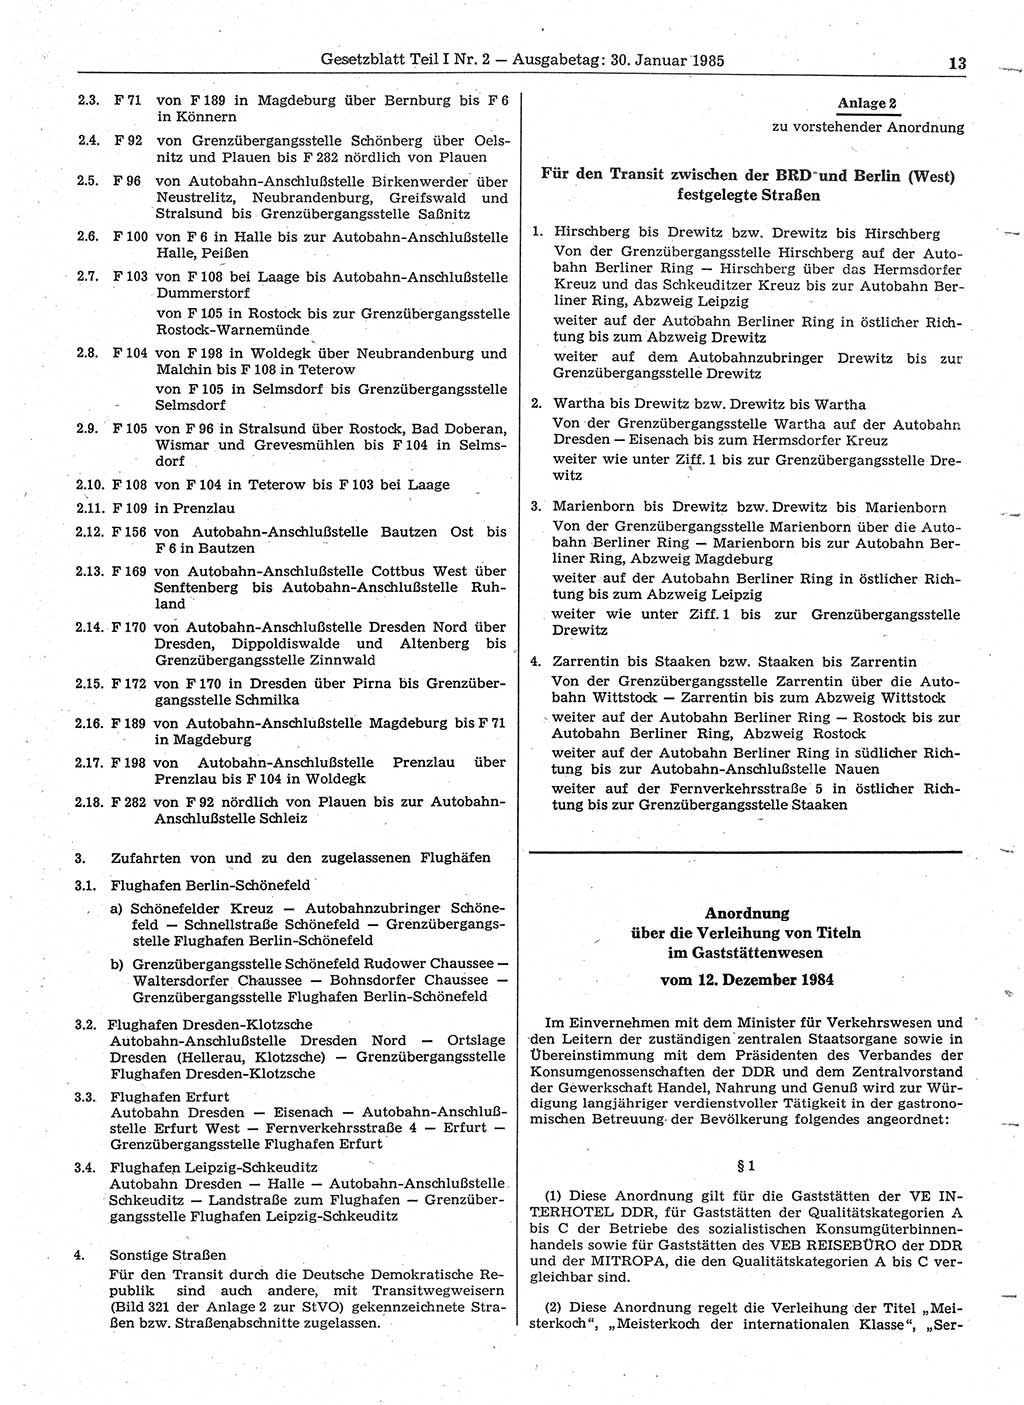 Gesetzblatt (GBl.) der Deutschen Demokratischen Republik (DDR) Teil Ⅰ 1985, Seite 13 (GBl. DDR Ⅰ 1985, S. 13)